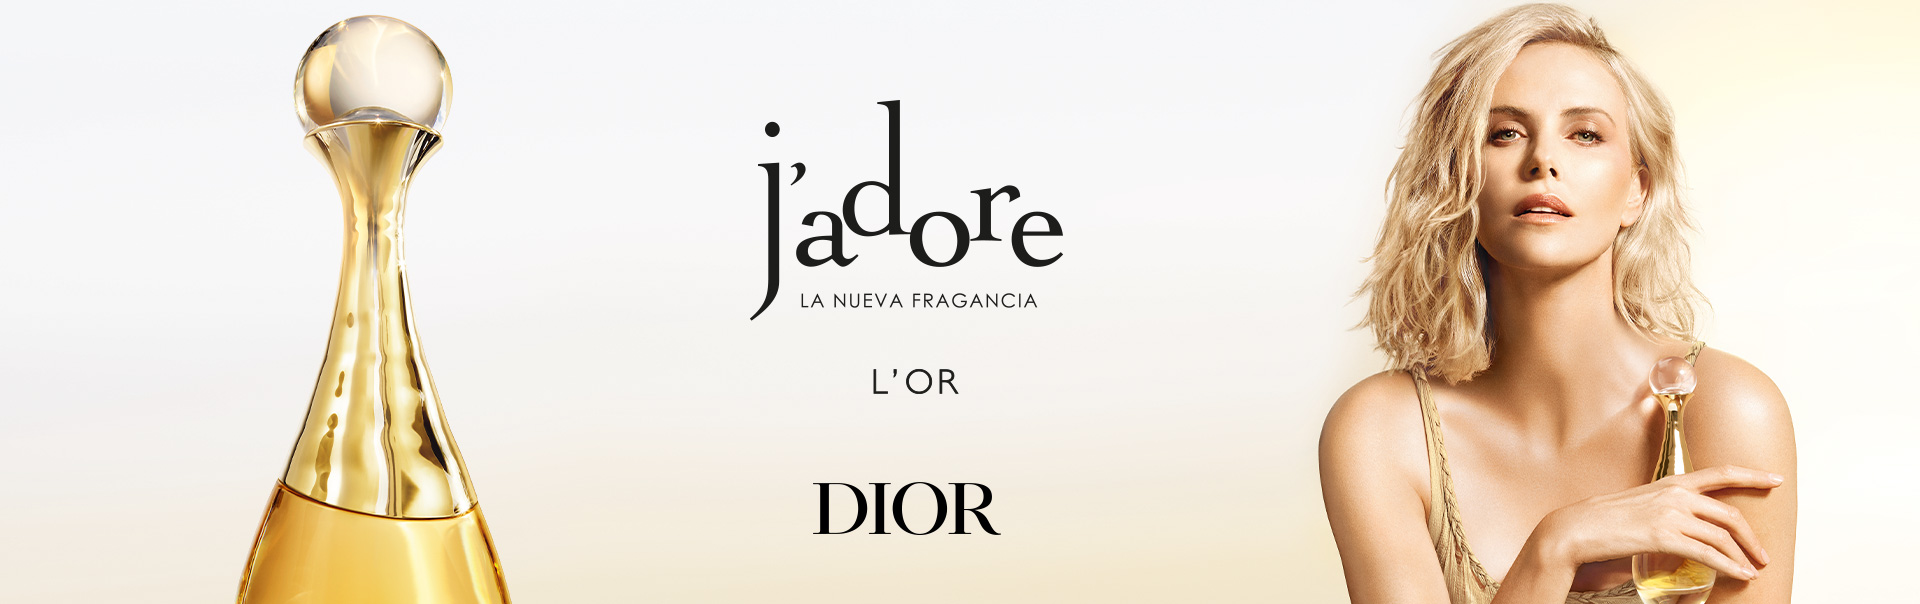 Dior J'adore La nueva fragancia L'OR